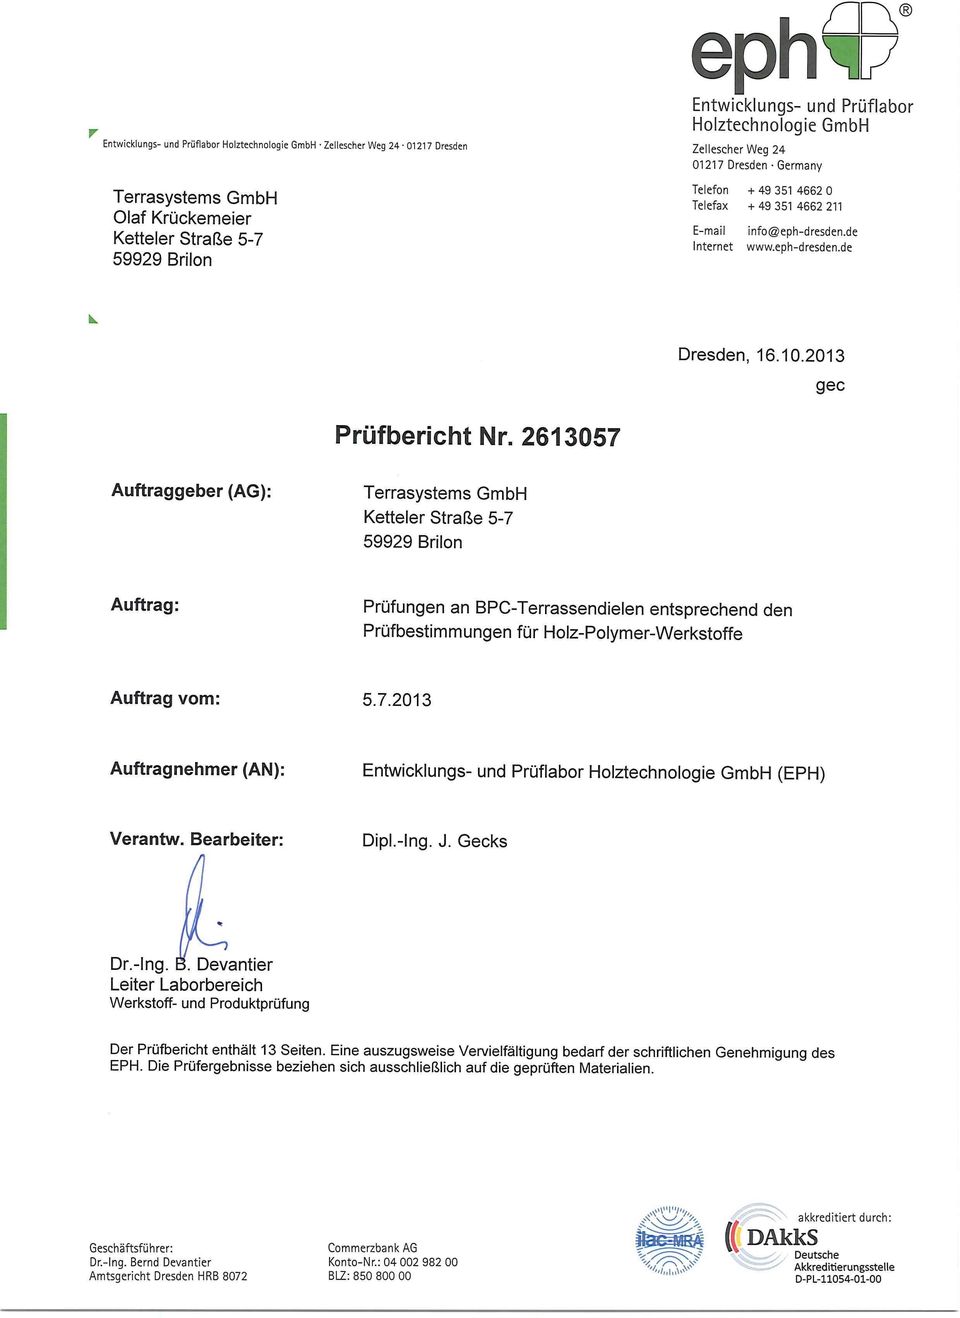 2613057 Auftraggeber (AG): Terrasystems GmbH Ketteier Straße 5-7 59929 Brilon Auftrag: Prüfungen an BPC-Terrassendielen entsprechend den Prüfbestimmungen für Holz-Polymer-Werkstoffe Auftrag vom: 5.7.2013 Auftragnehmer (AN): Entwicklungs- und Prüflabor Holztechnologie GmbH (EPH) Verantw.